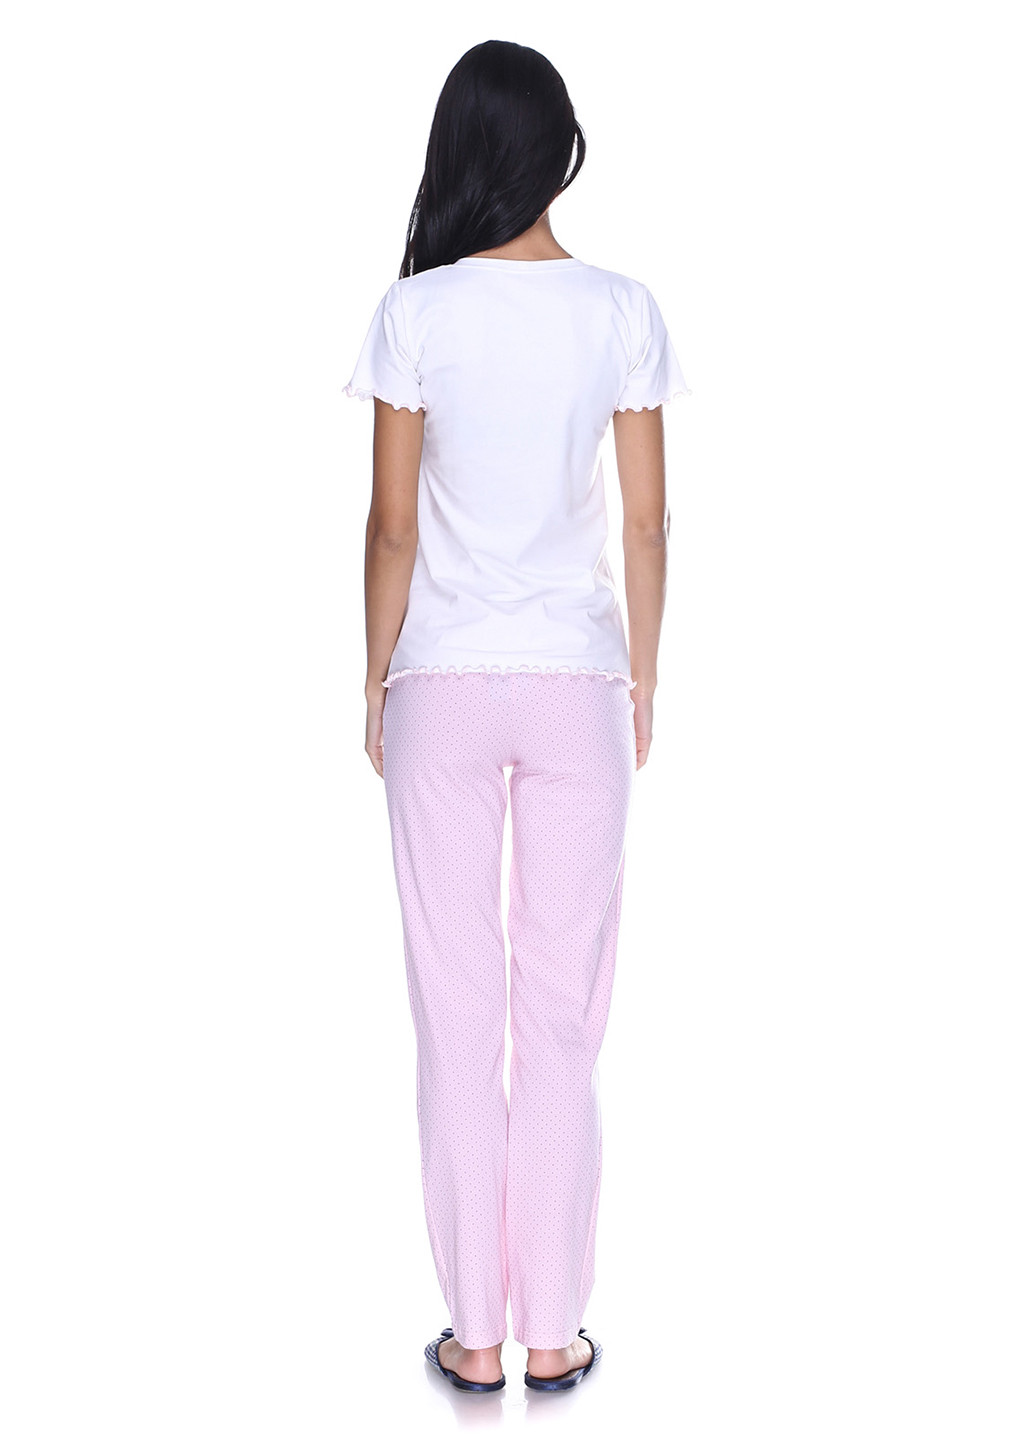 Розовая всесезон пижама (футболка, брюки) футболка + брюки Fleri